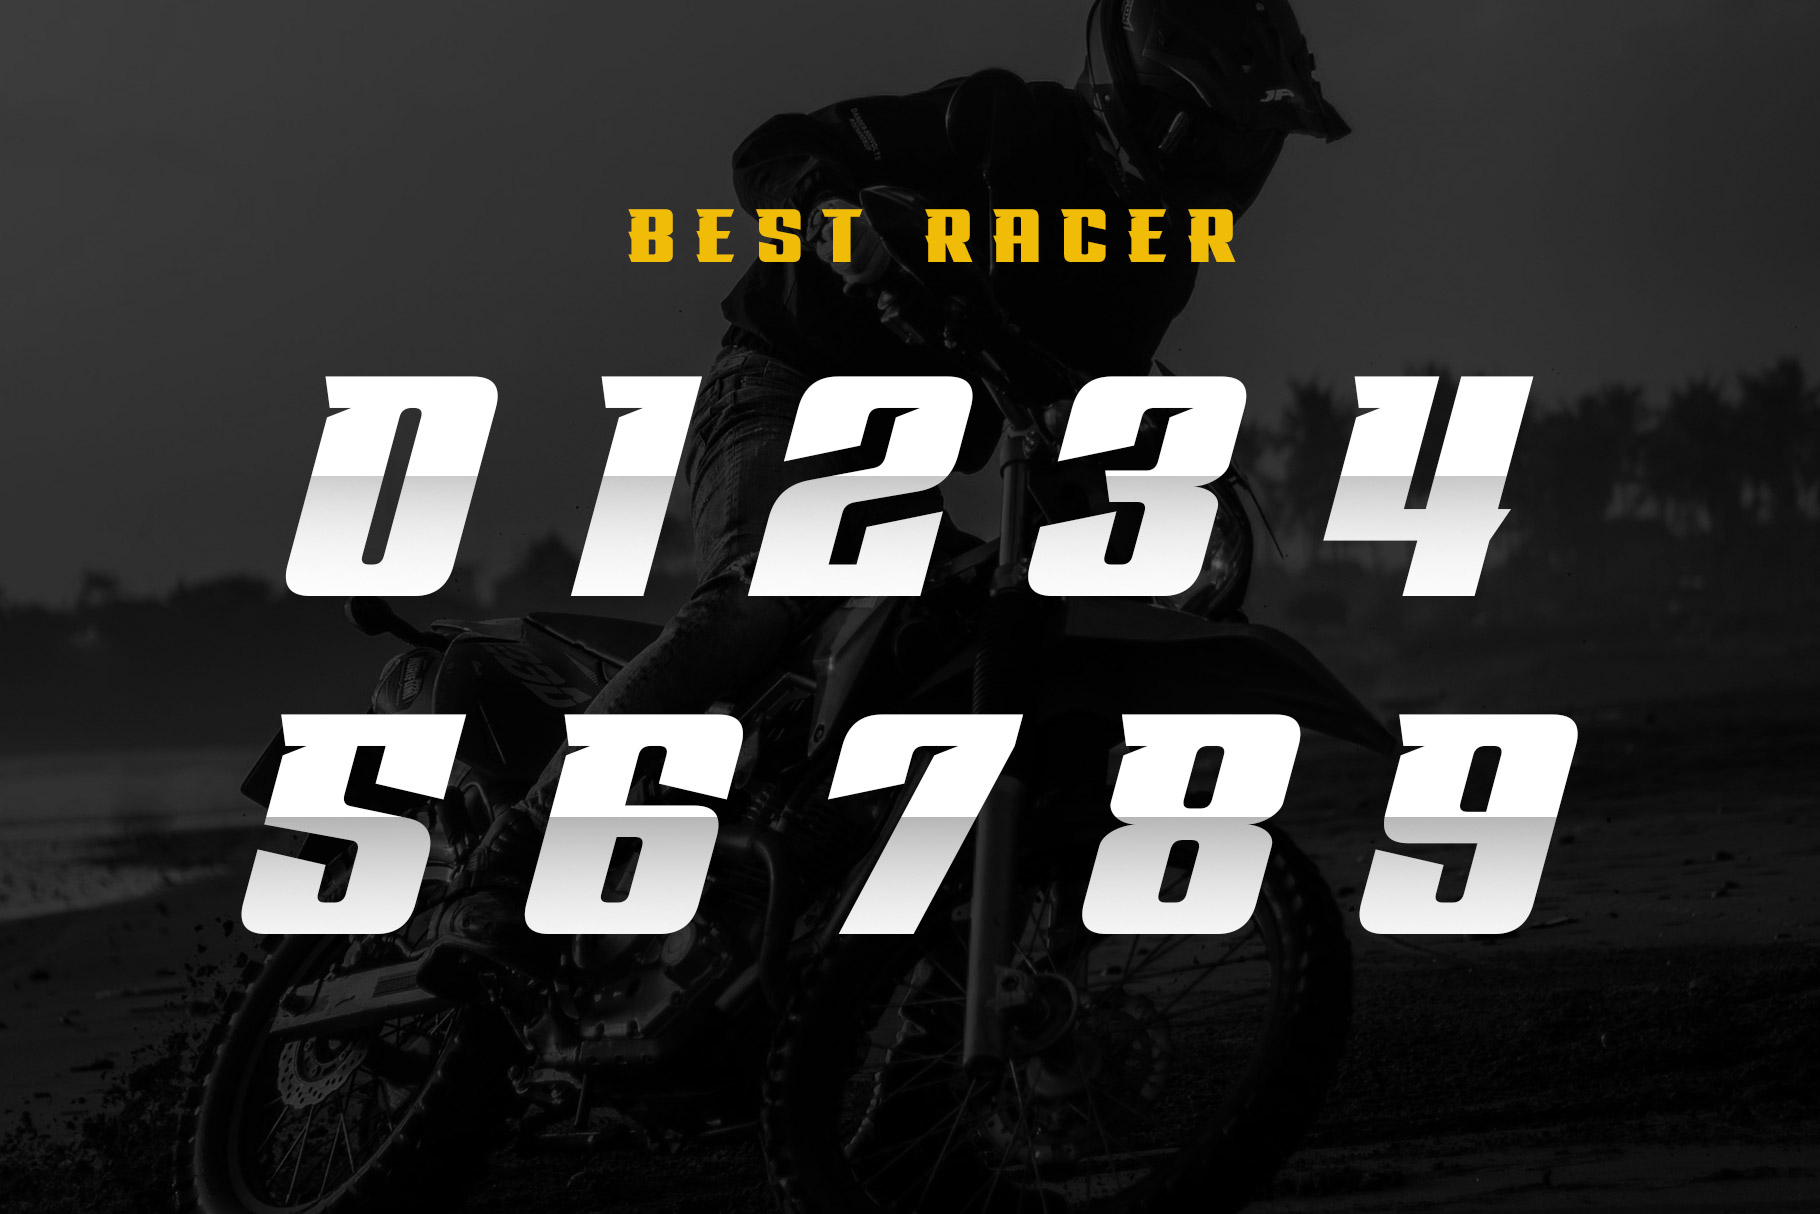 Best Racer